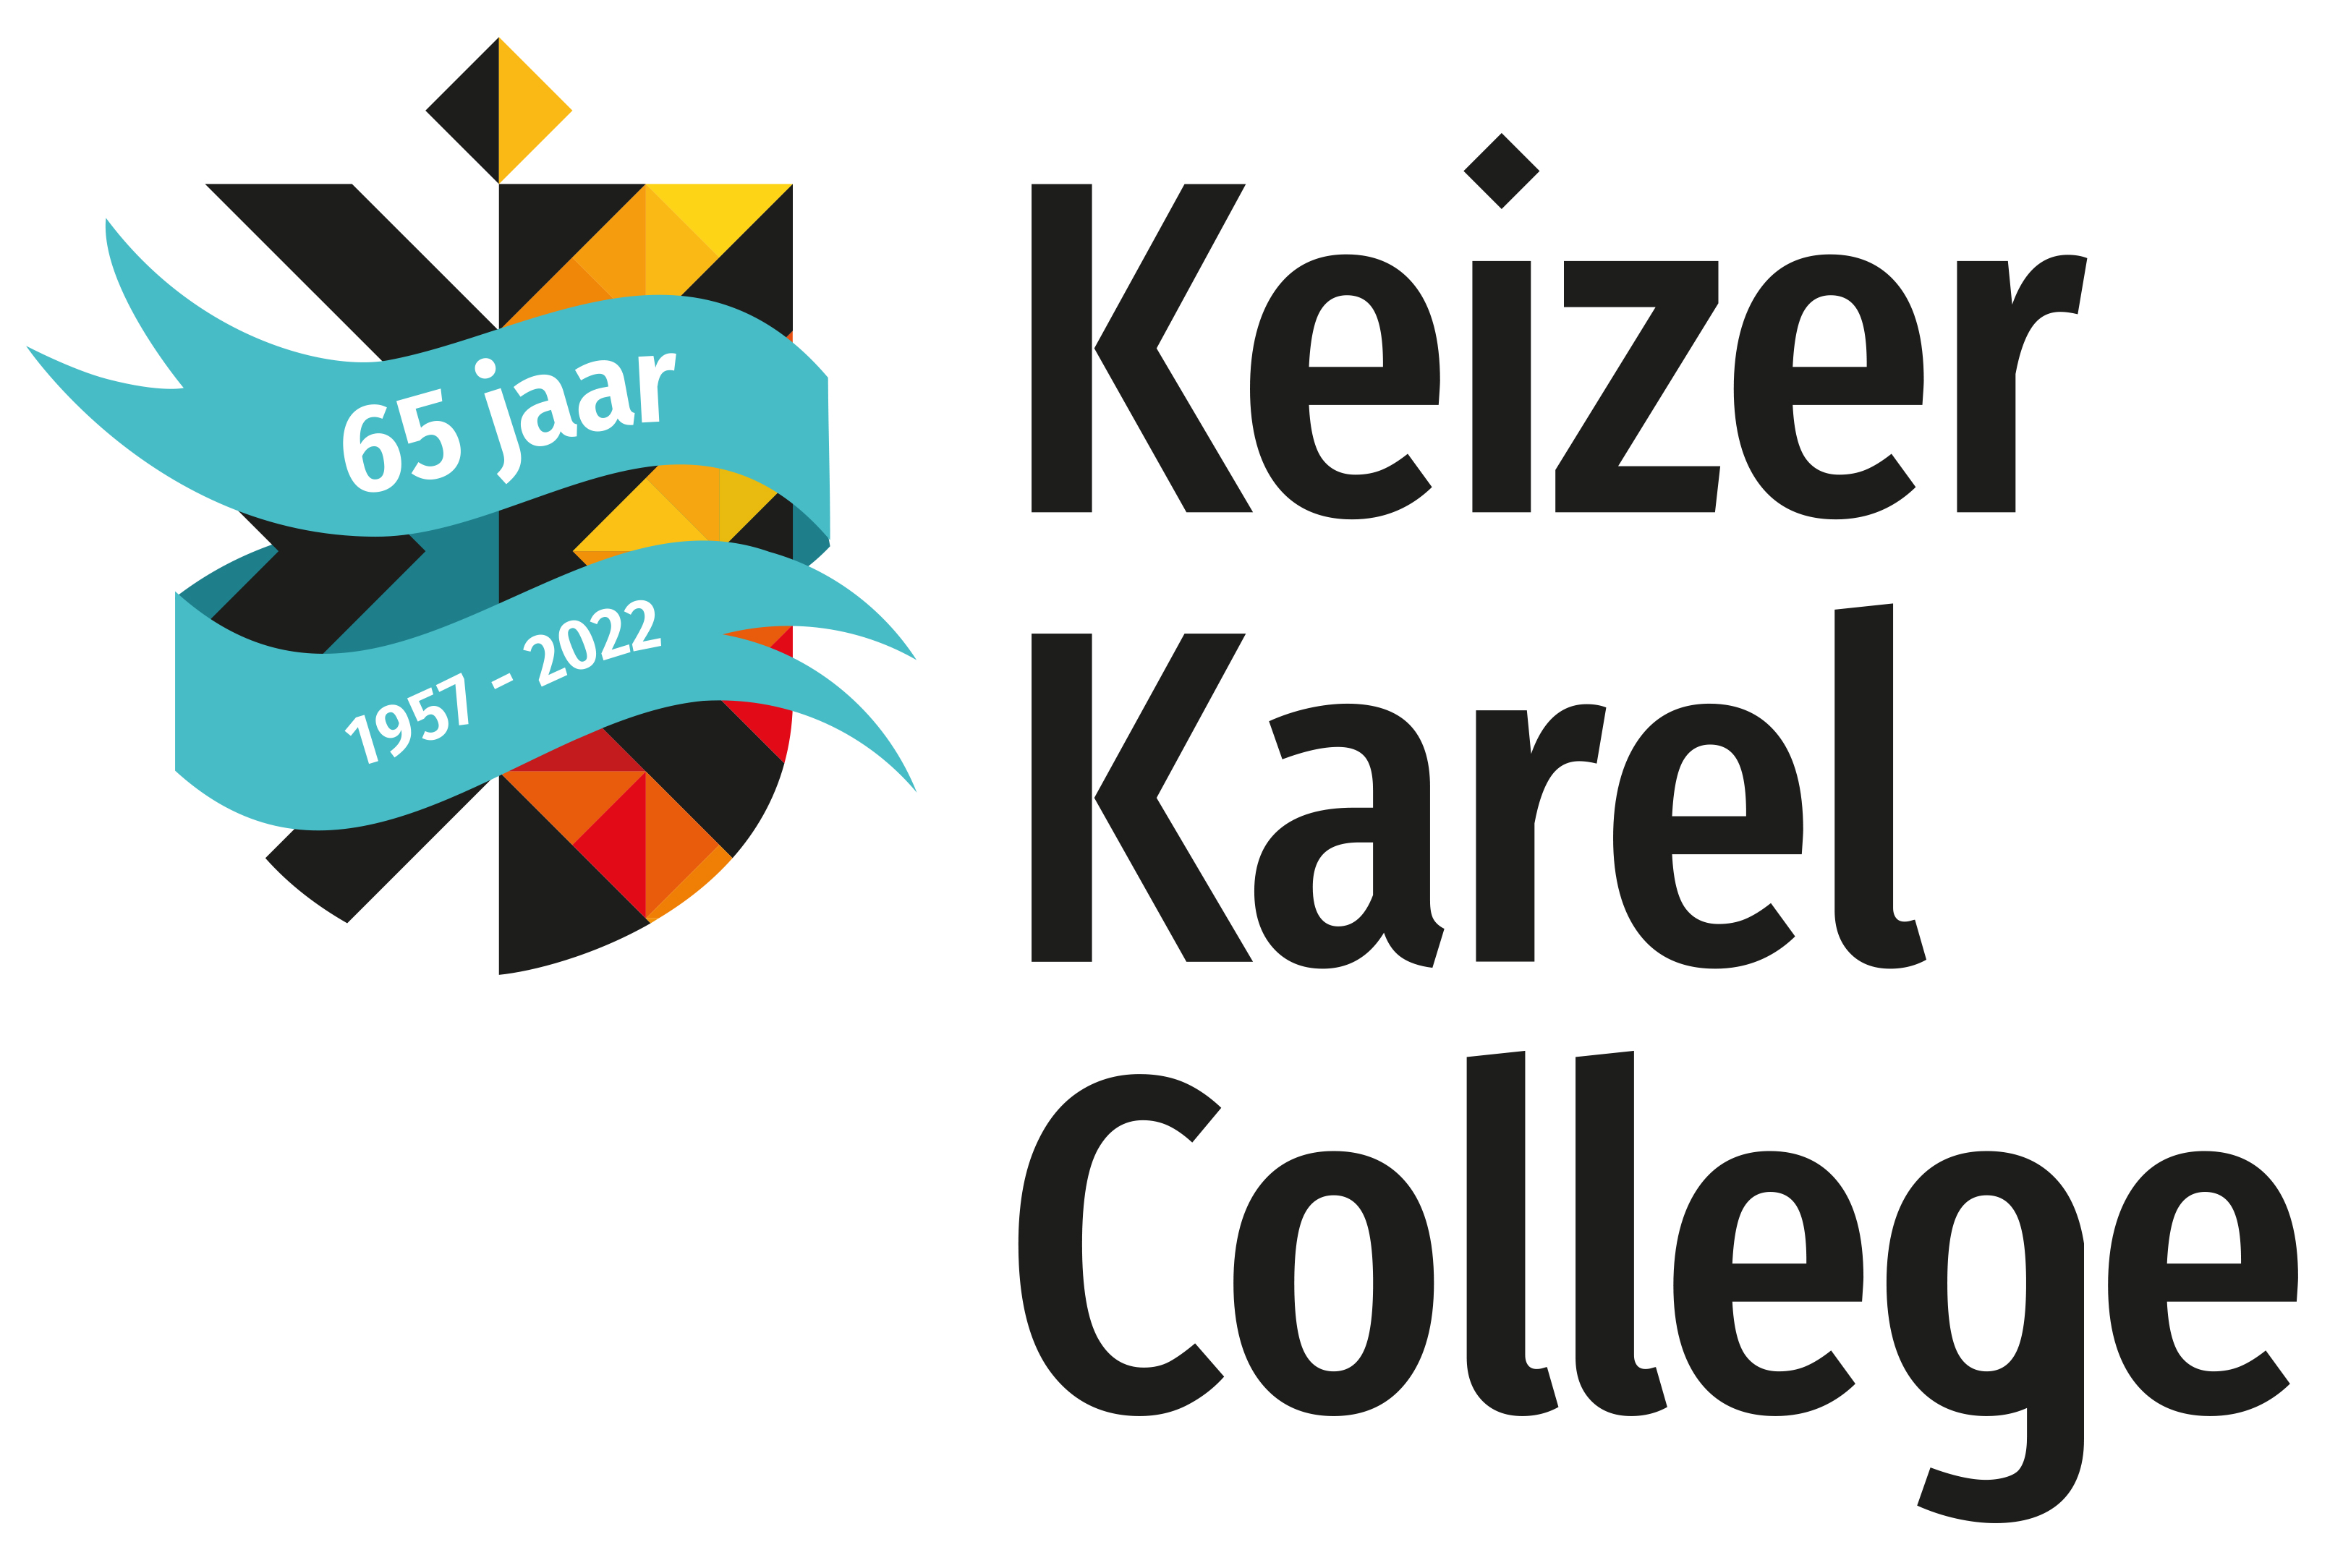 Keizer Karel College 65 jaar! logo